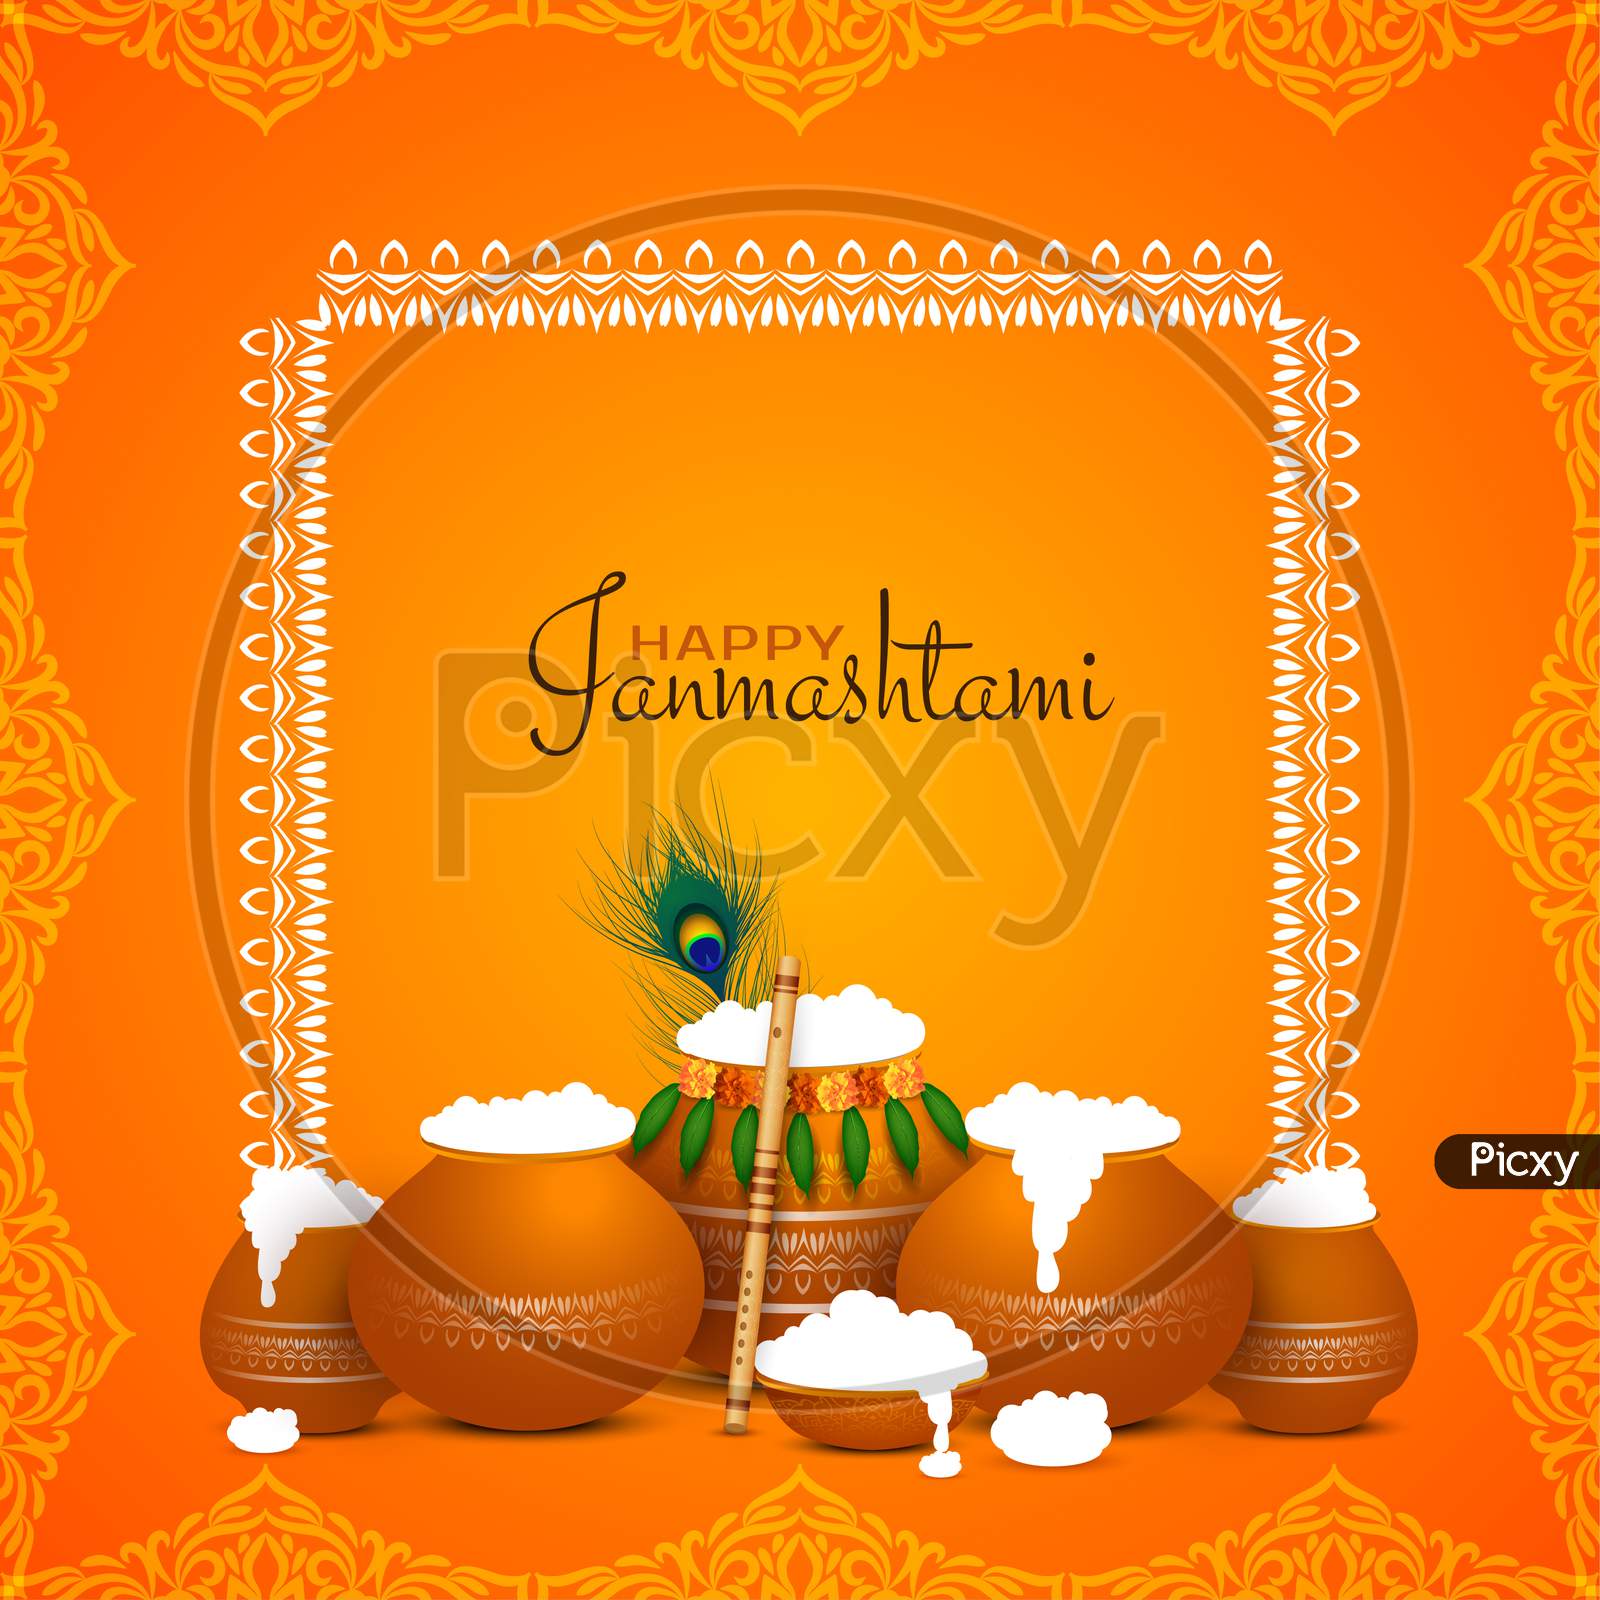 Happy Janmashtami Festival Beautiful Background